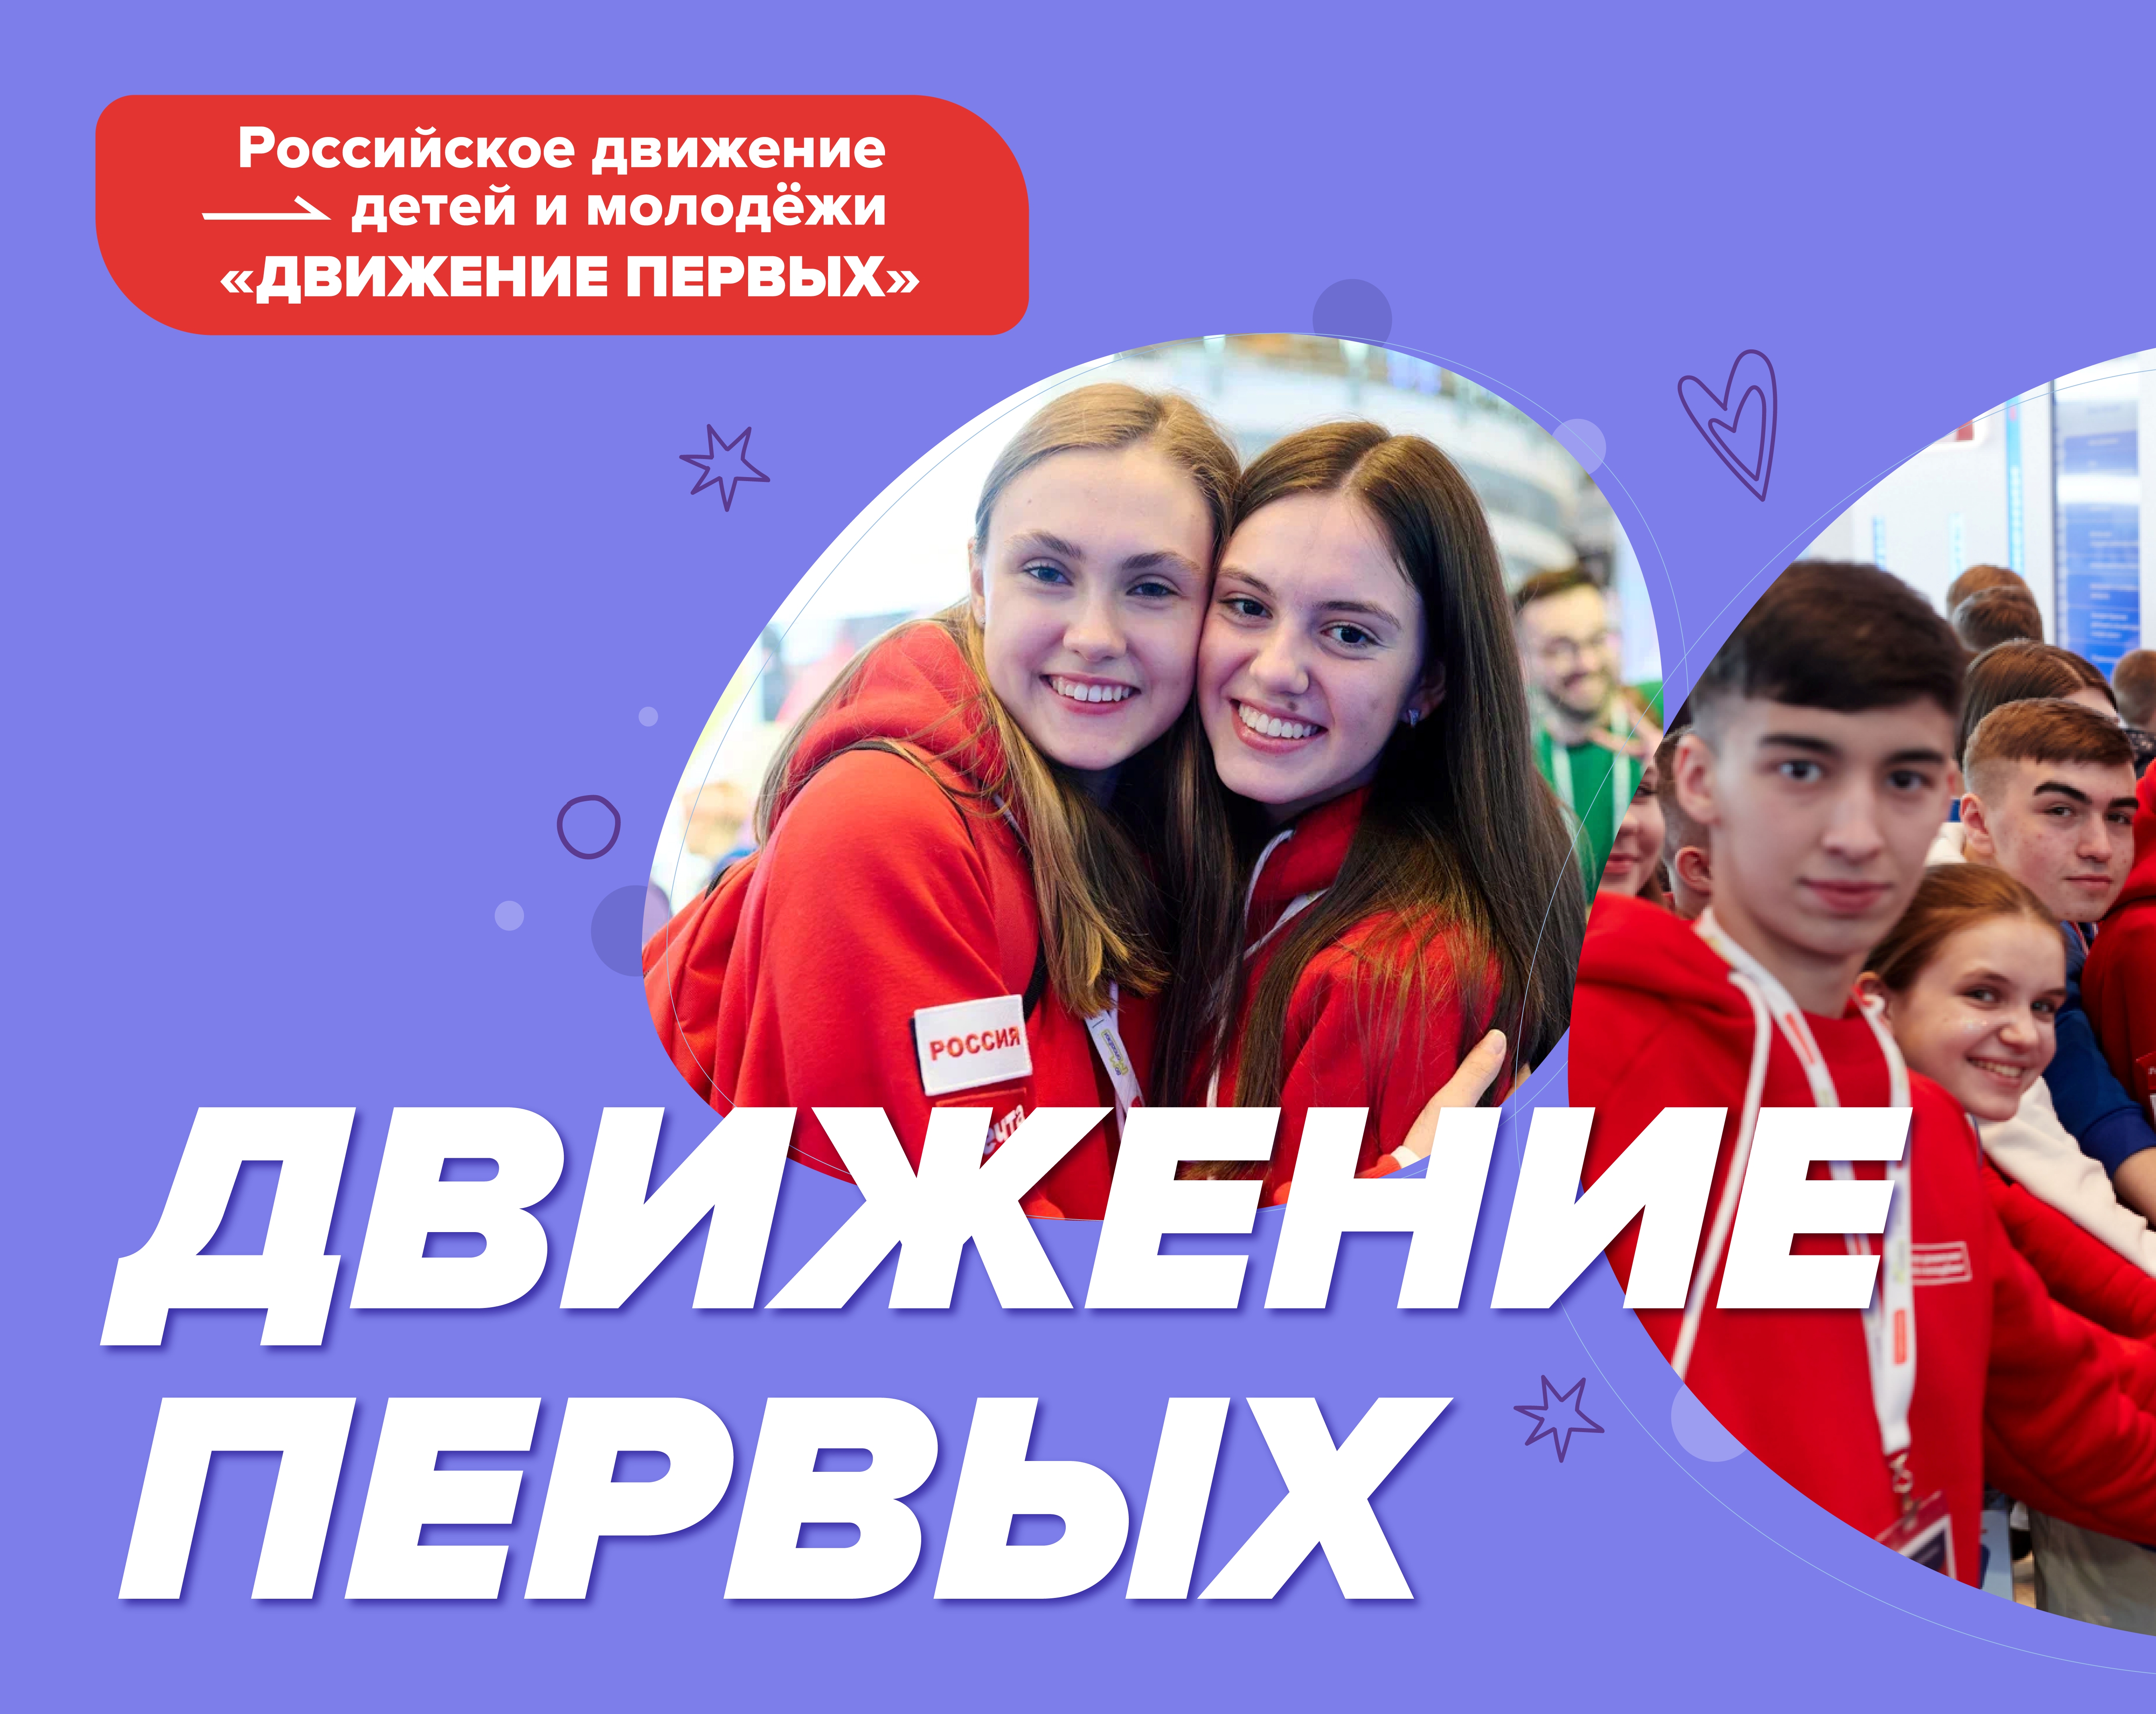 Российское движение детей и молодежи «Движение первых».